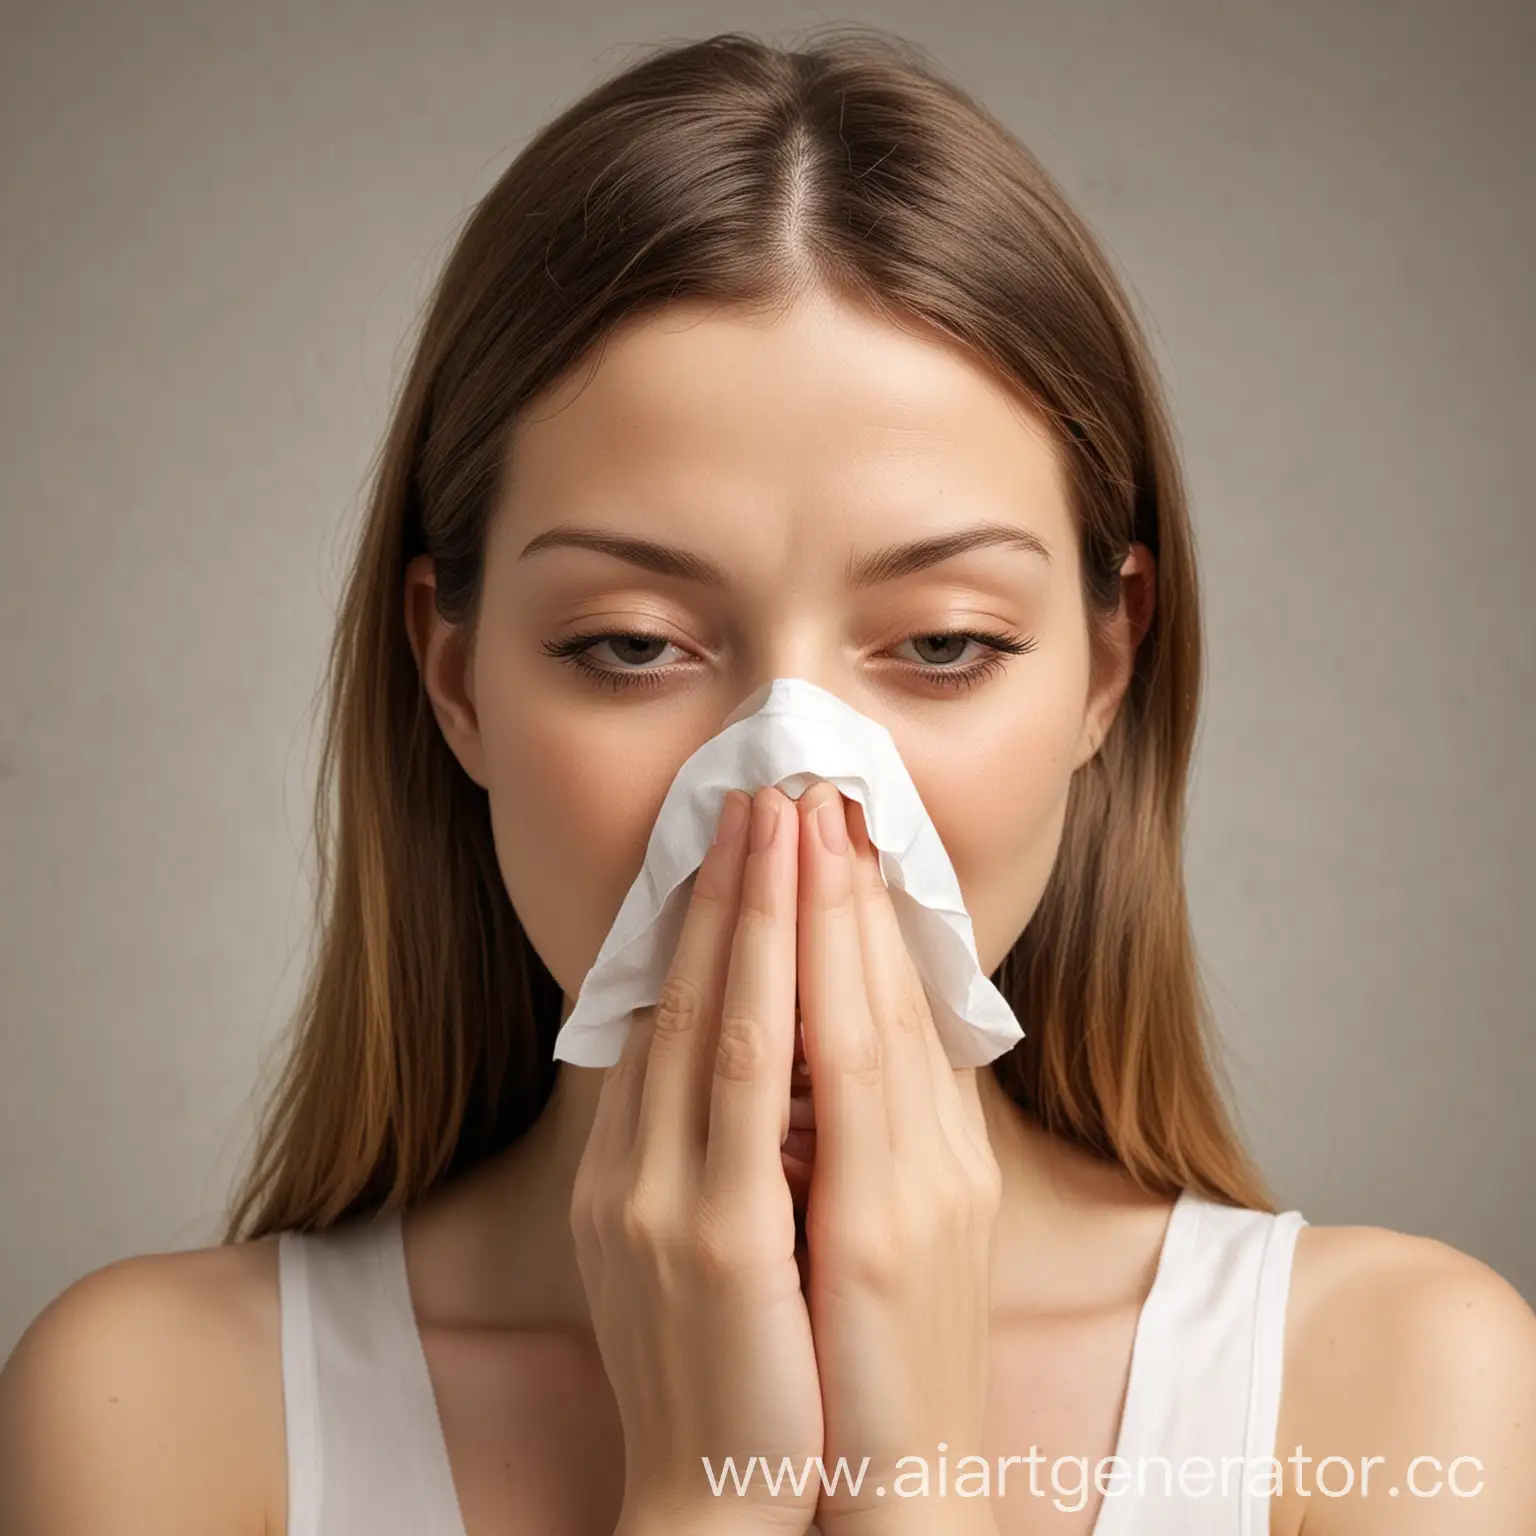 Various-Allergy-Symptoms-Sneezing-Watery-Eyes-and-Skin-Rash